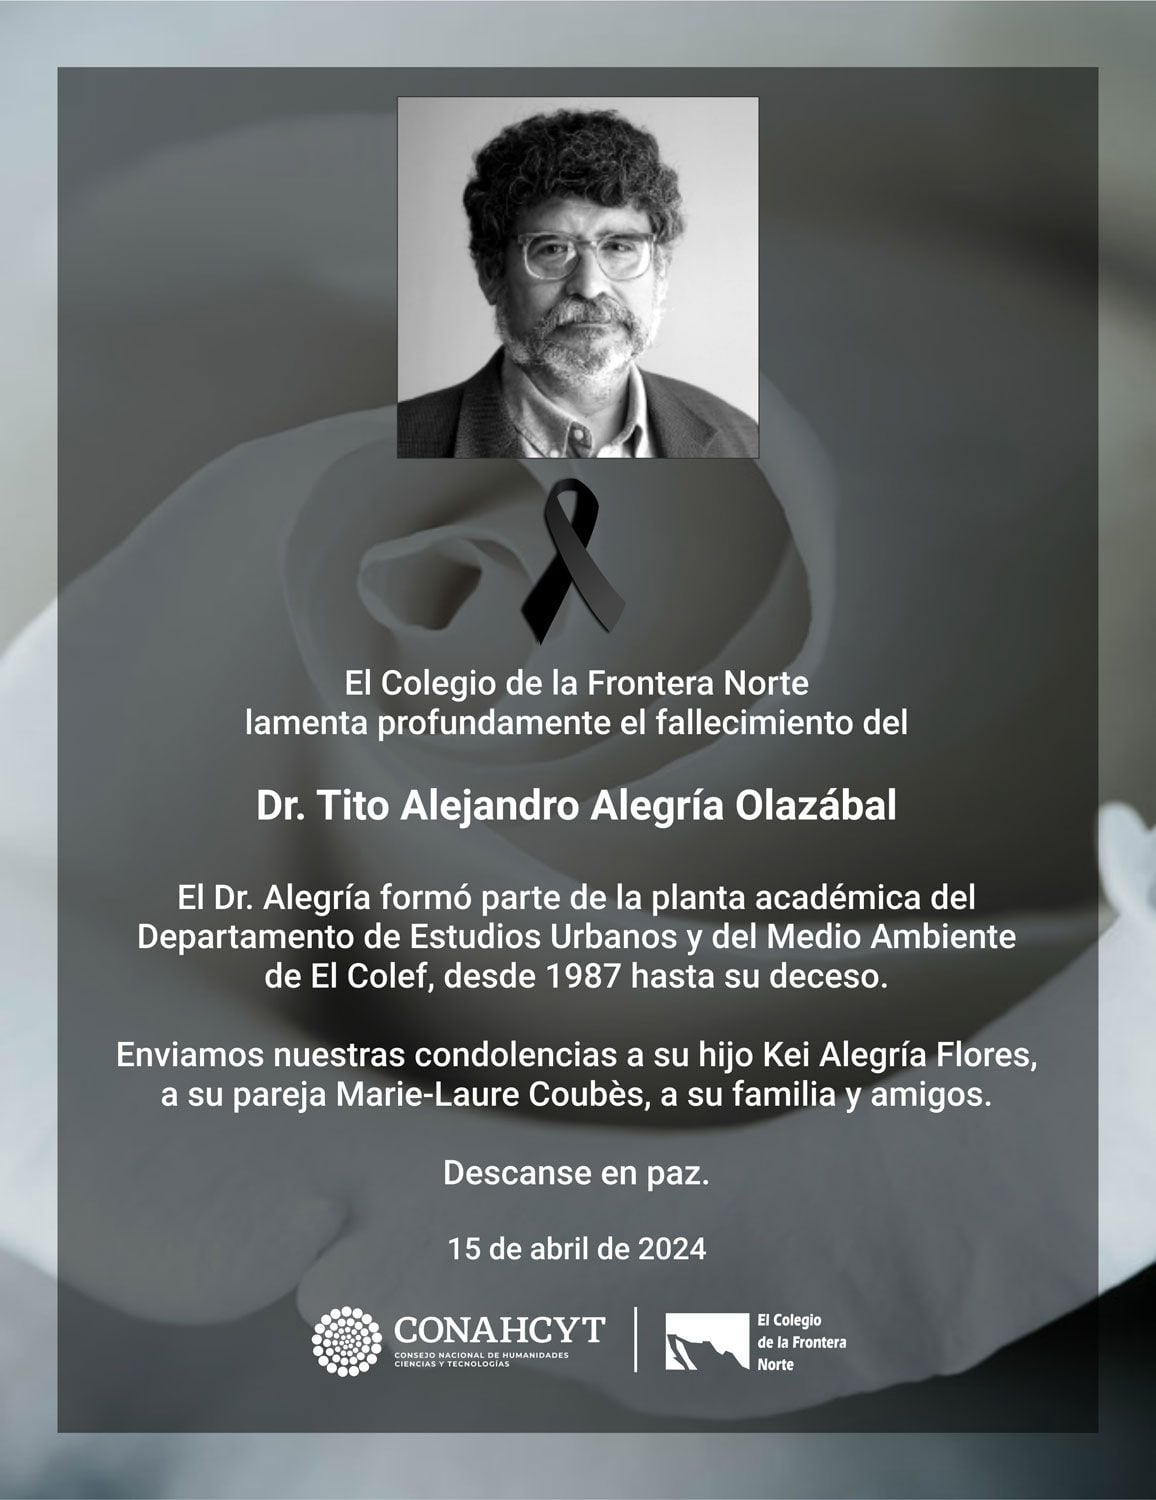 El Colegio de la Frontera Norte informó sobre el fallecimiento del académico Tito Alejandro Alegría Olazábal.